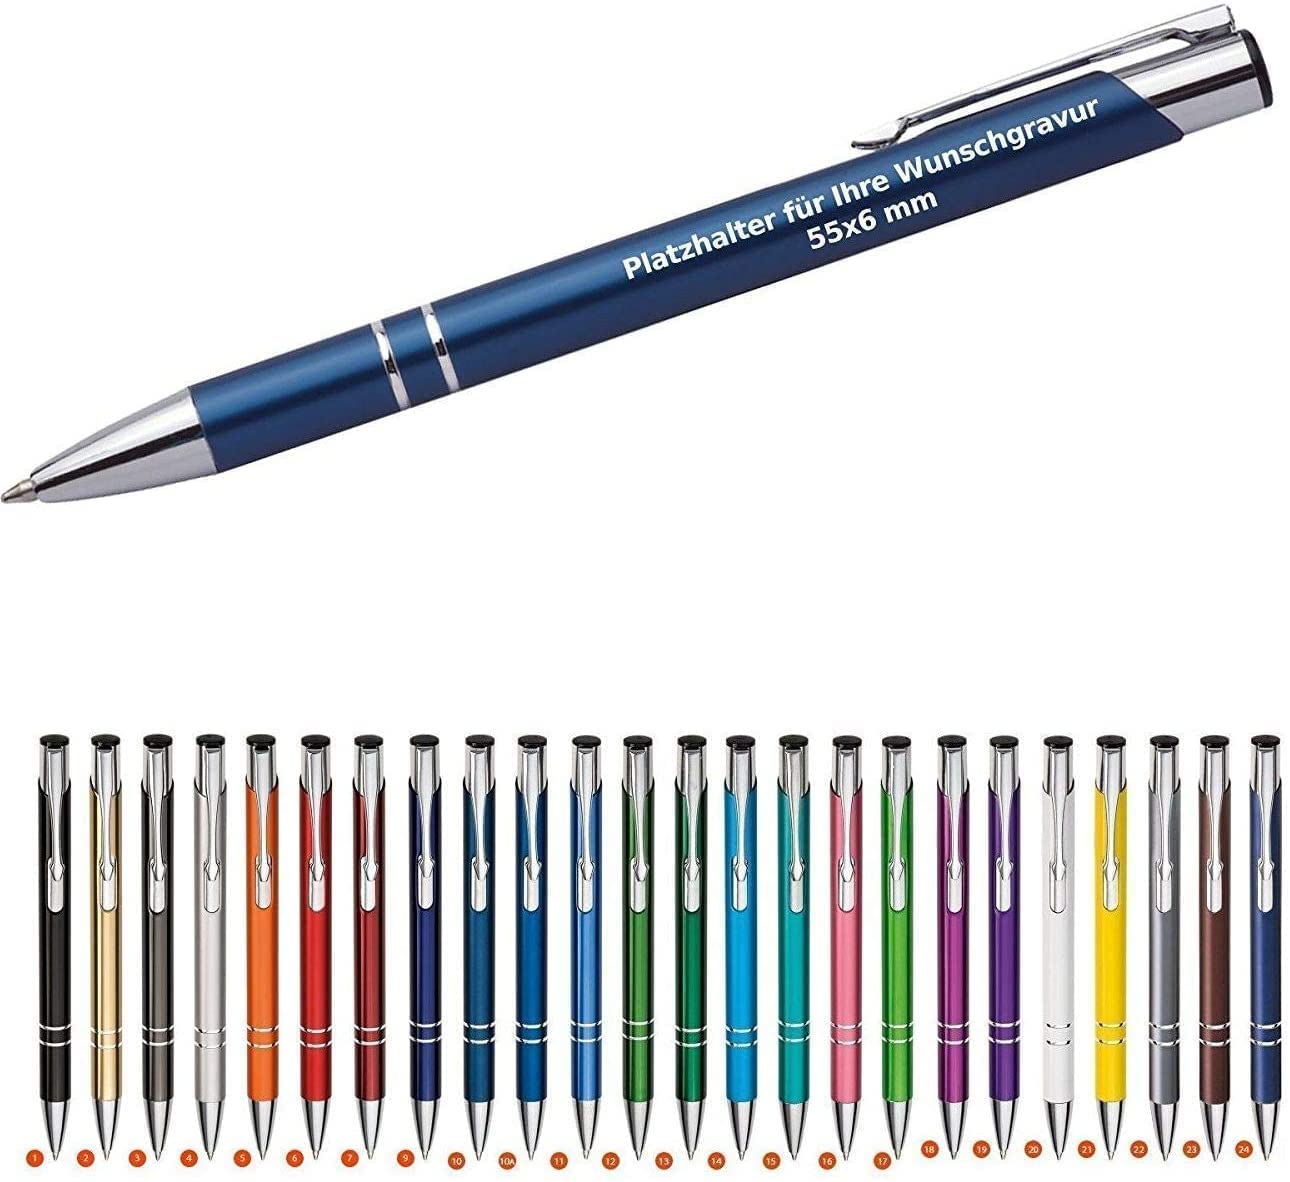 WPRO 250 x Cosima Kugelschreiber, Farbmix aus Metall mit Gravur (Neu & alle mit gleicher Wunschgravur) blauschreibend